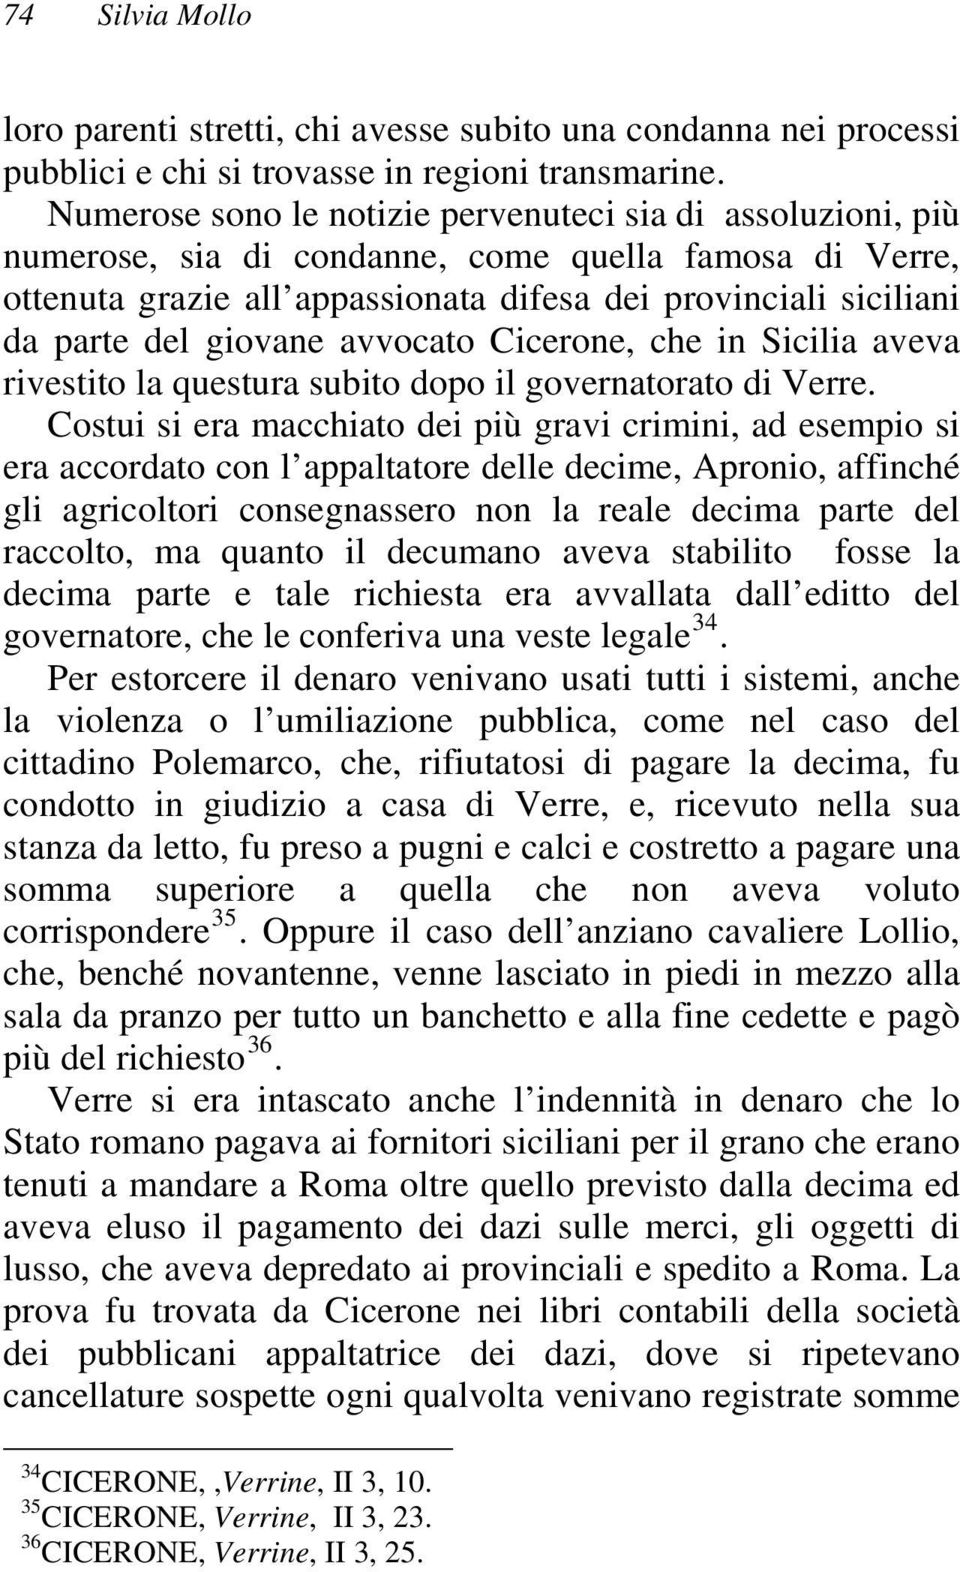 giovane avvocato Cicerone, che in Sicilia aveva rivestito la questura subito dopo il governatorato di Verre.